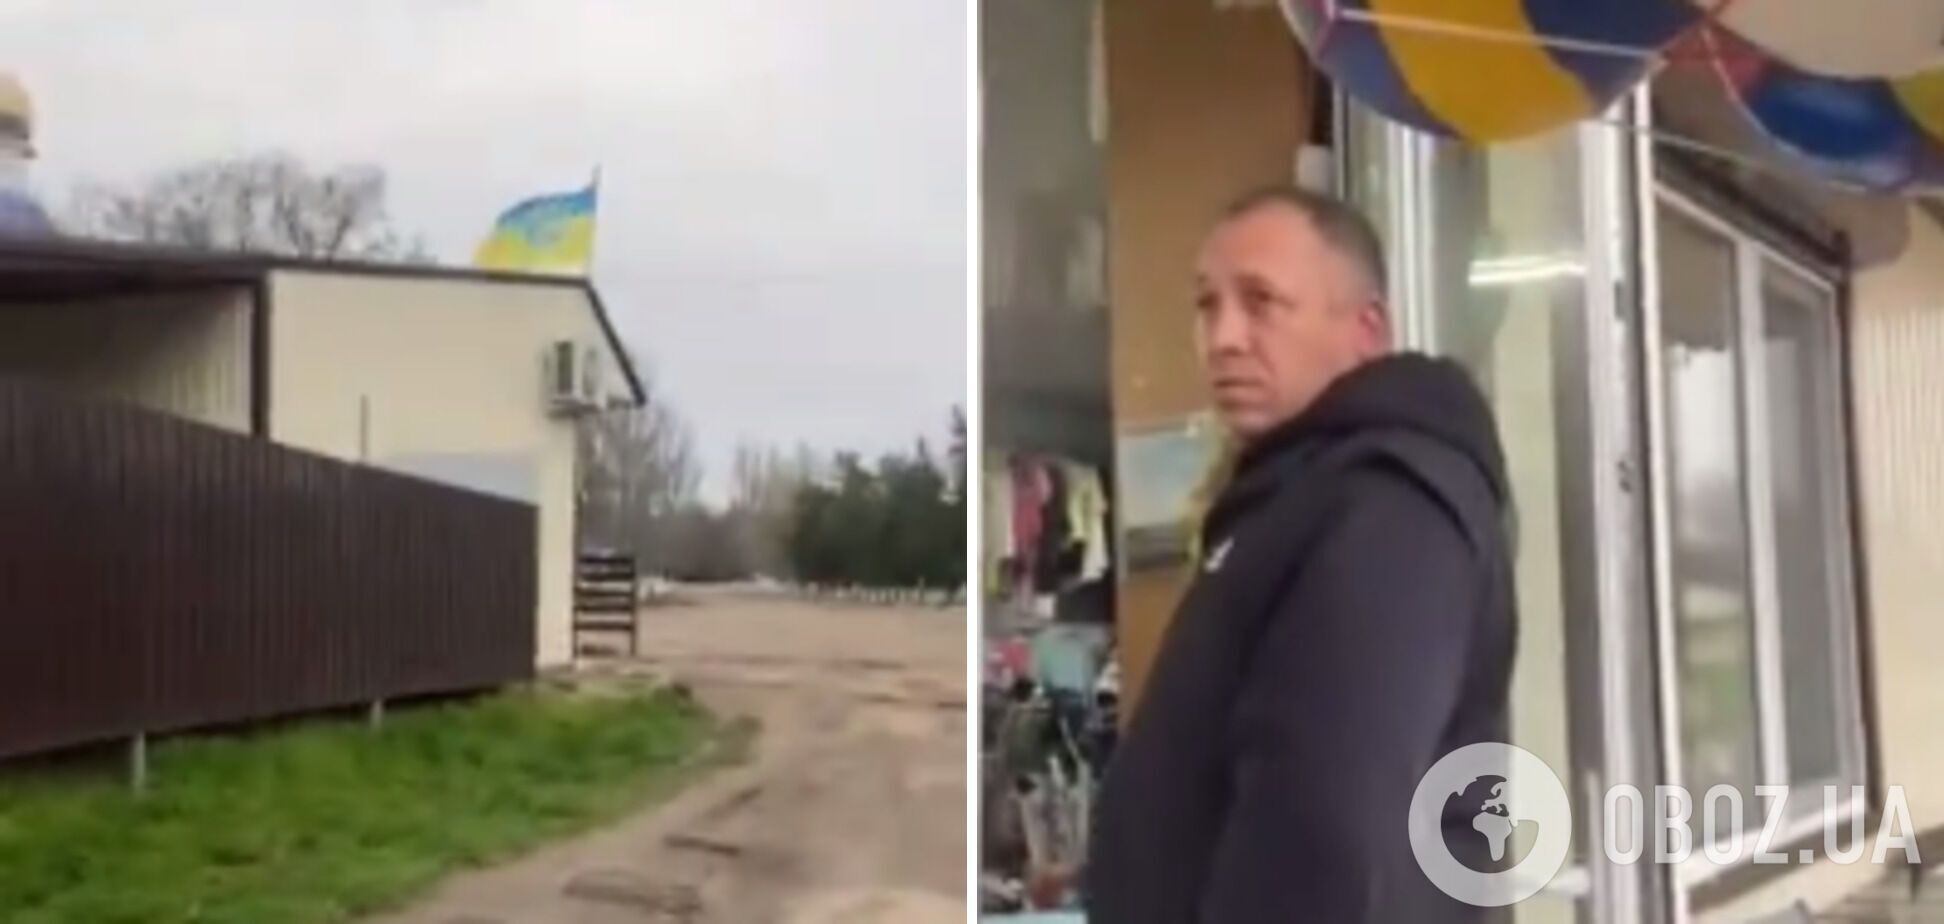 Требовал снять: на Николаевщине мужчина набросился на владельцев магазина из-за украинского флага. Видео